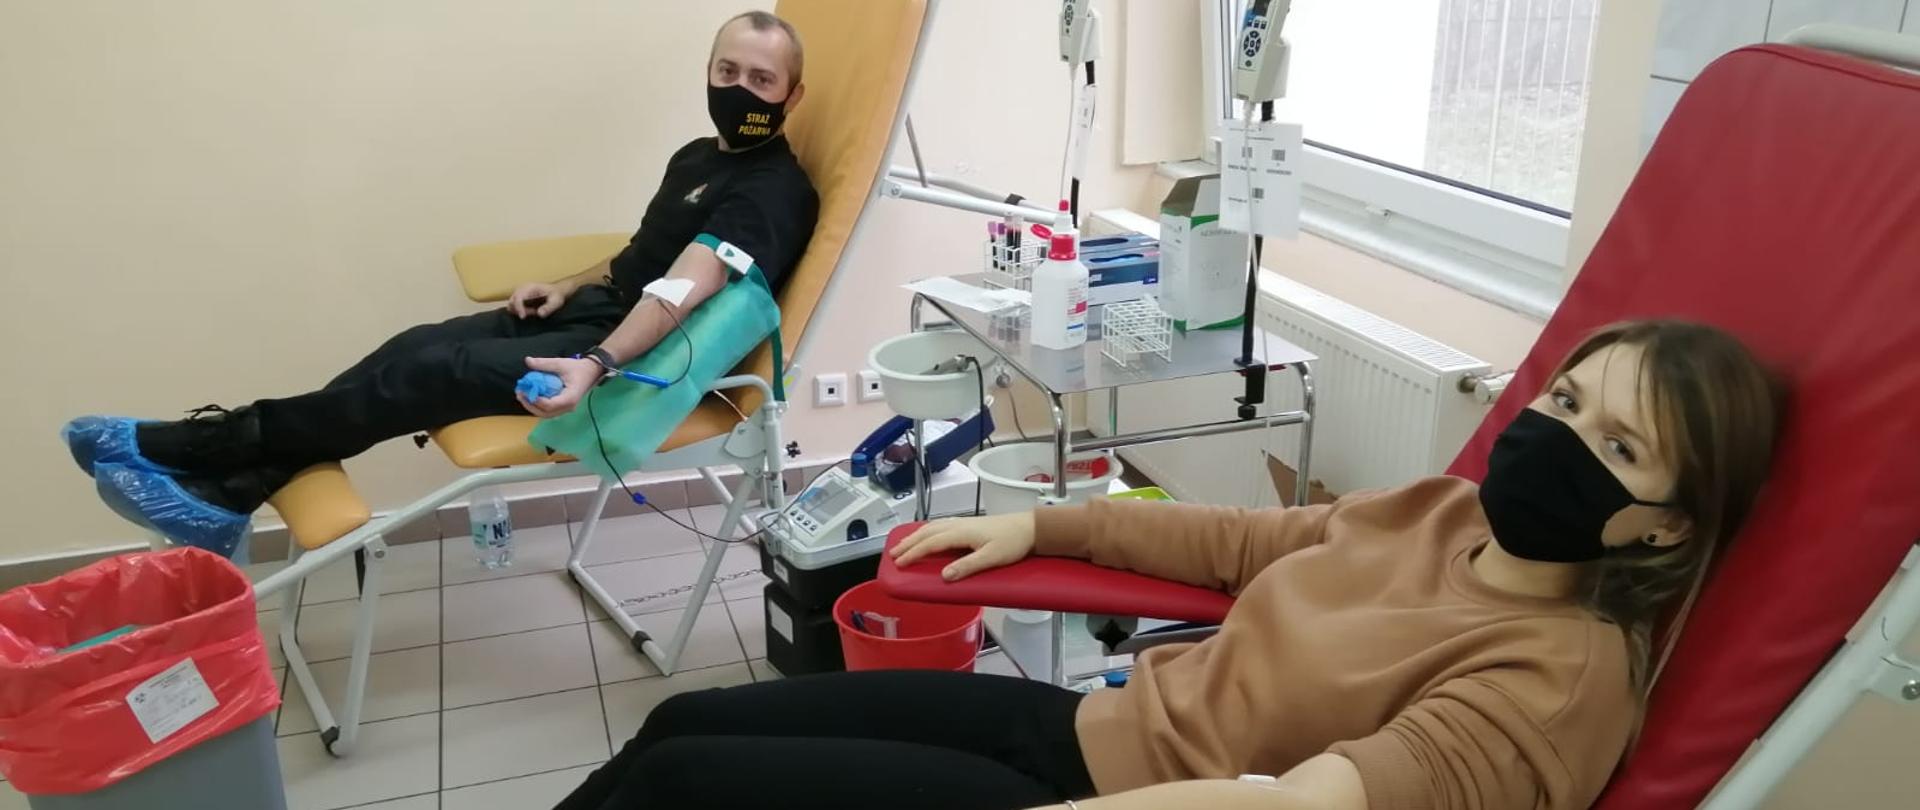 Na zdjęciu znajdują się dwie osoby w fotelach służących do pobierania krwi. Po lewej stronie znajduje się Komendant Powiatowy PSP, który oddaje krew, po lewej stronie kobieta, która jest już po oddaniu krwi.